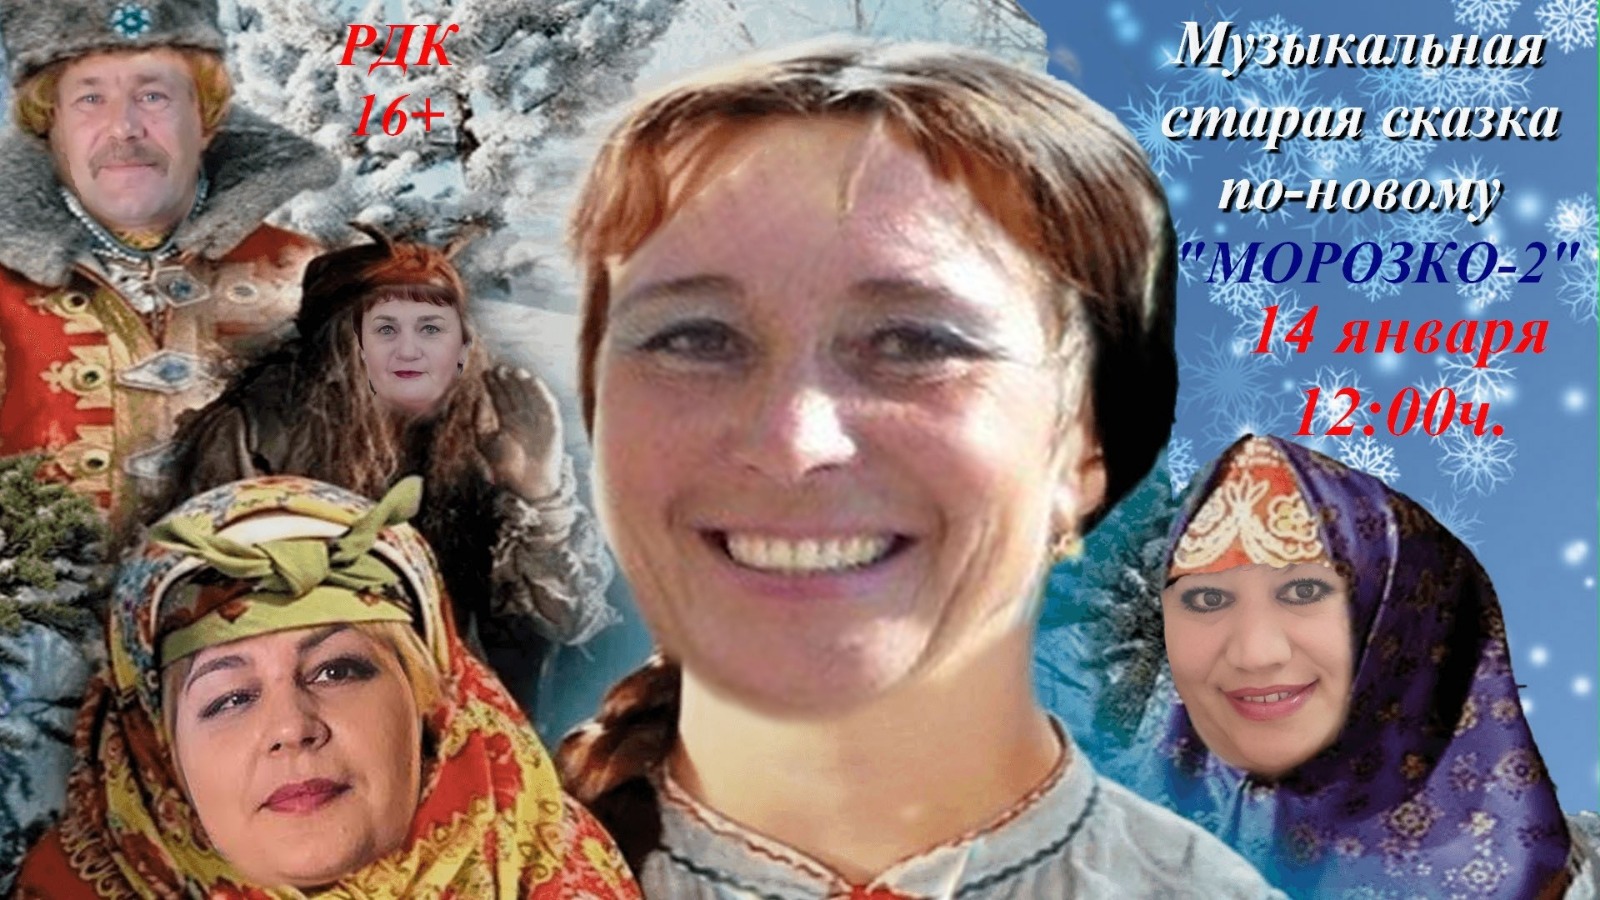 В воскресенье, 14 января, в 12 часов в Макушинском Районном Доме культуры состоится праздничная программа, посвященная старому Новому году - Музыкальная старая сказка по новому &quot; Морозко-2&quot;.